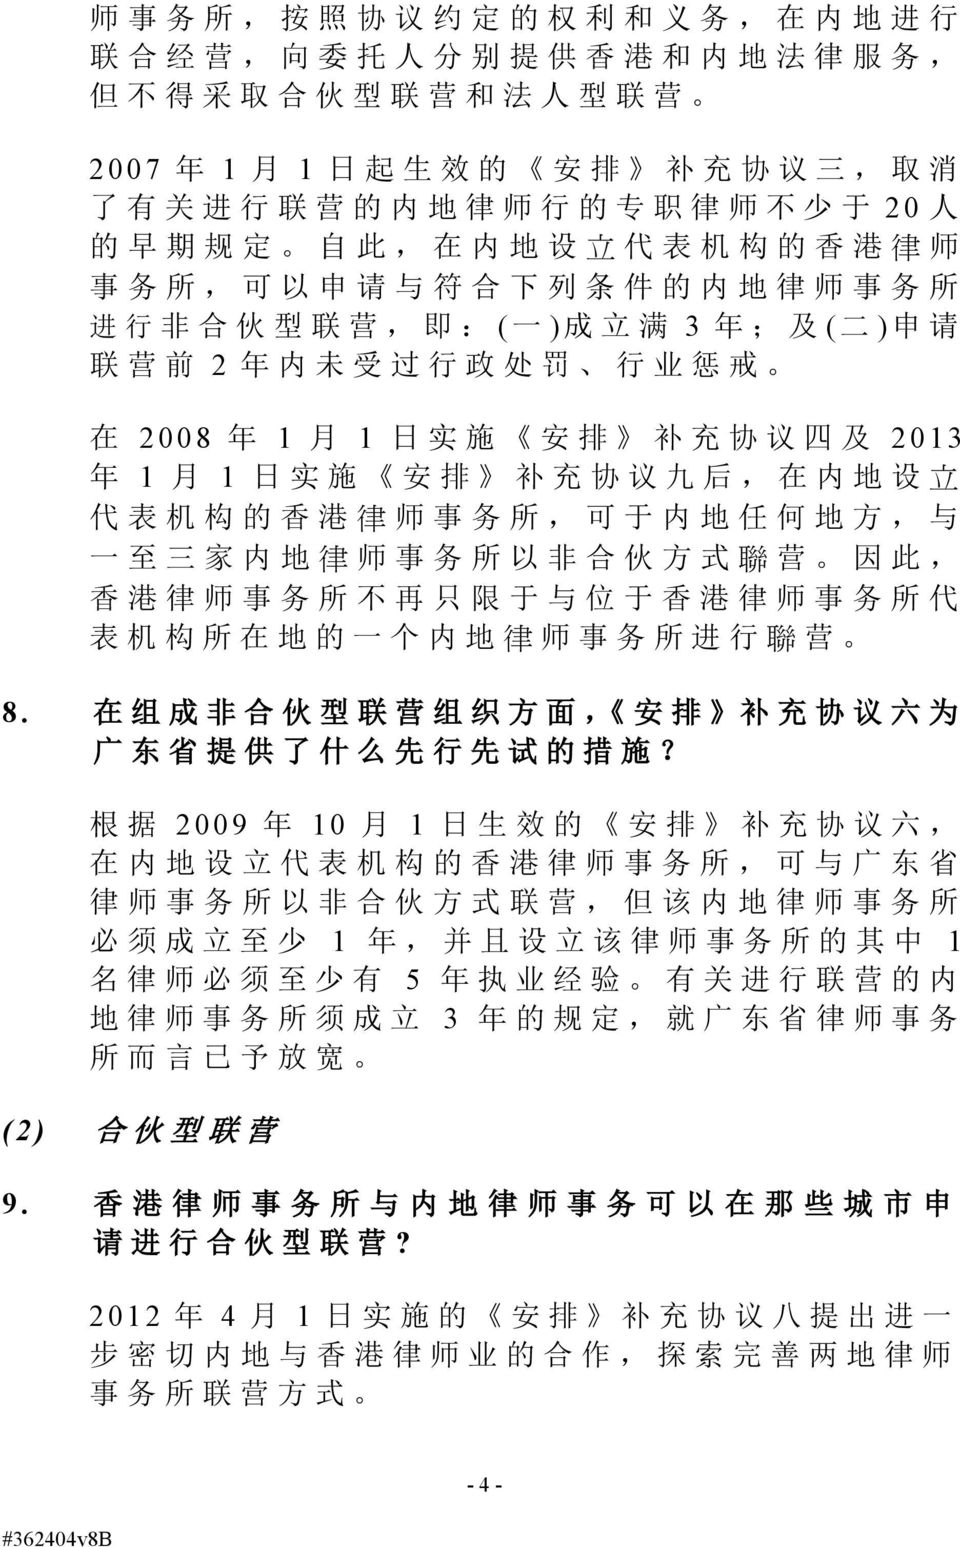 日 实 施 安 排 补 充 协 议 四 及 2013 年 1 月 1 日 实 施 安 排 补 充 协 议 九 后, 在 内 地 设 立 代 表 机 构 的 香 港 律 师 事 务 所, 可 于 内 地 任 何 地 方, 与 一 至 三 家 内 地 律 师 事 务 所 以 非 合 伙 方 式 聯 营 因 此, 香 港 律 师 事 务 所 不 再 只 限 于 与 位 于 香 港 律 师 事 务 所